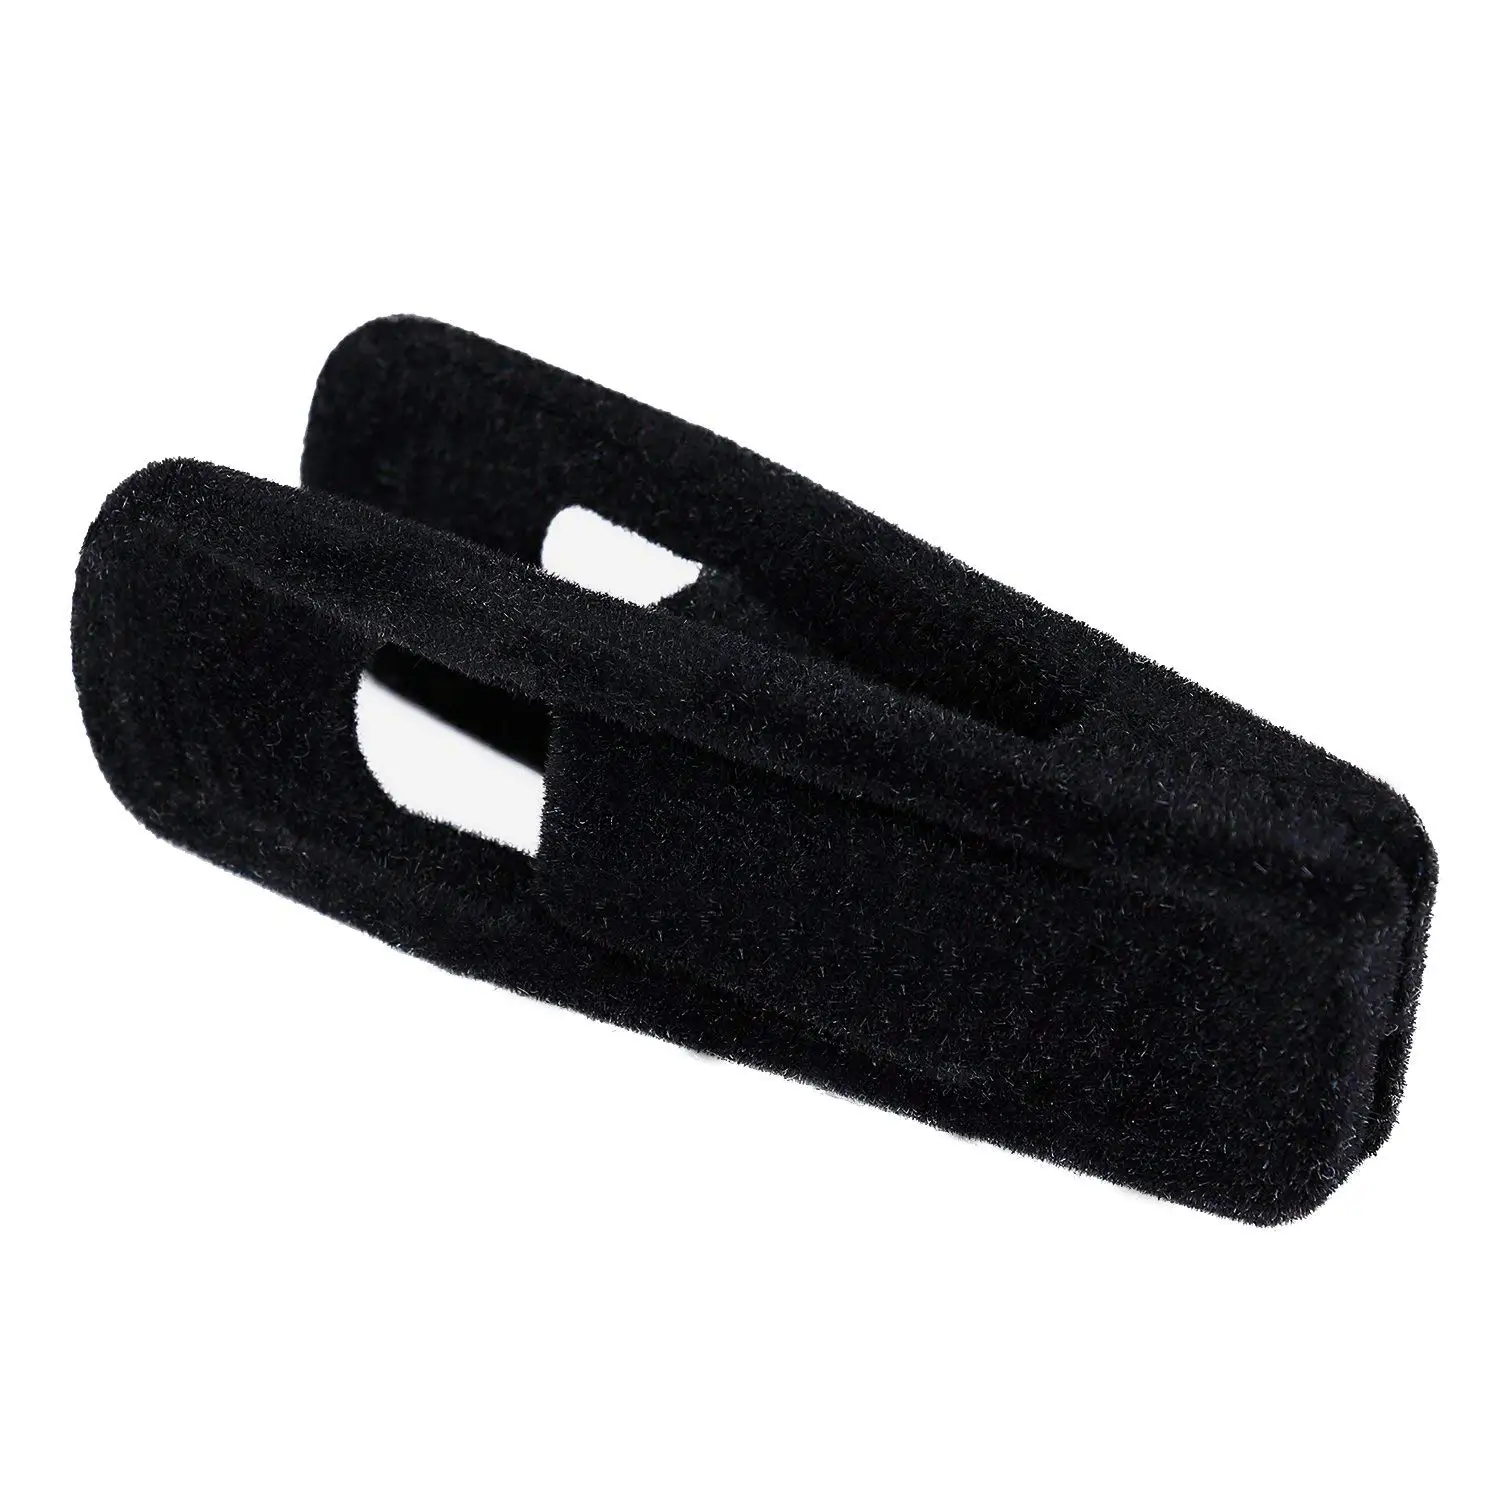 Вешалки 60 Упак. вешалки для брюк зажимы сильный прищепки на палец идеально подходит для тонких вешалок (черный)